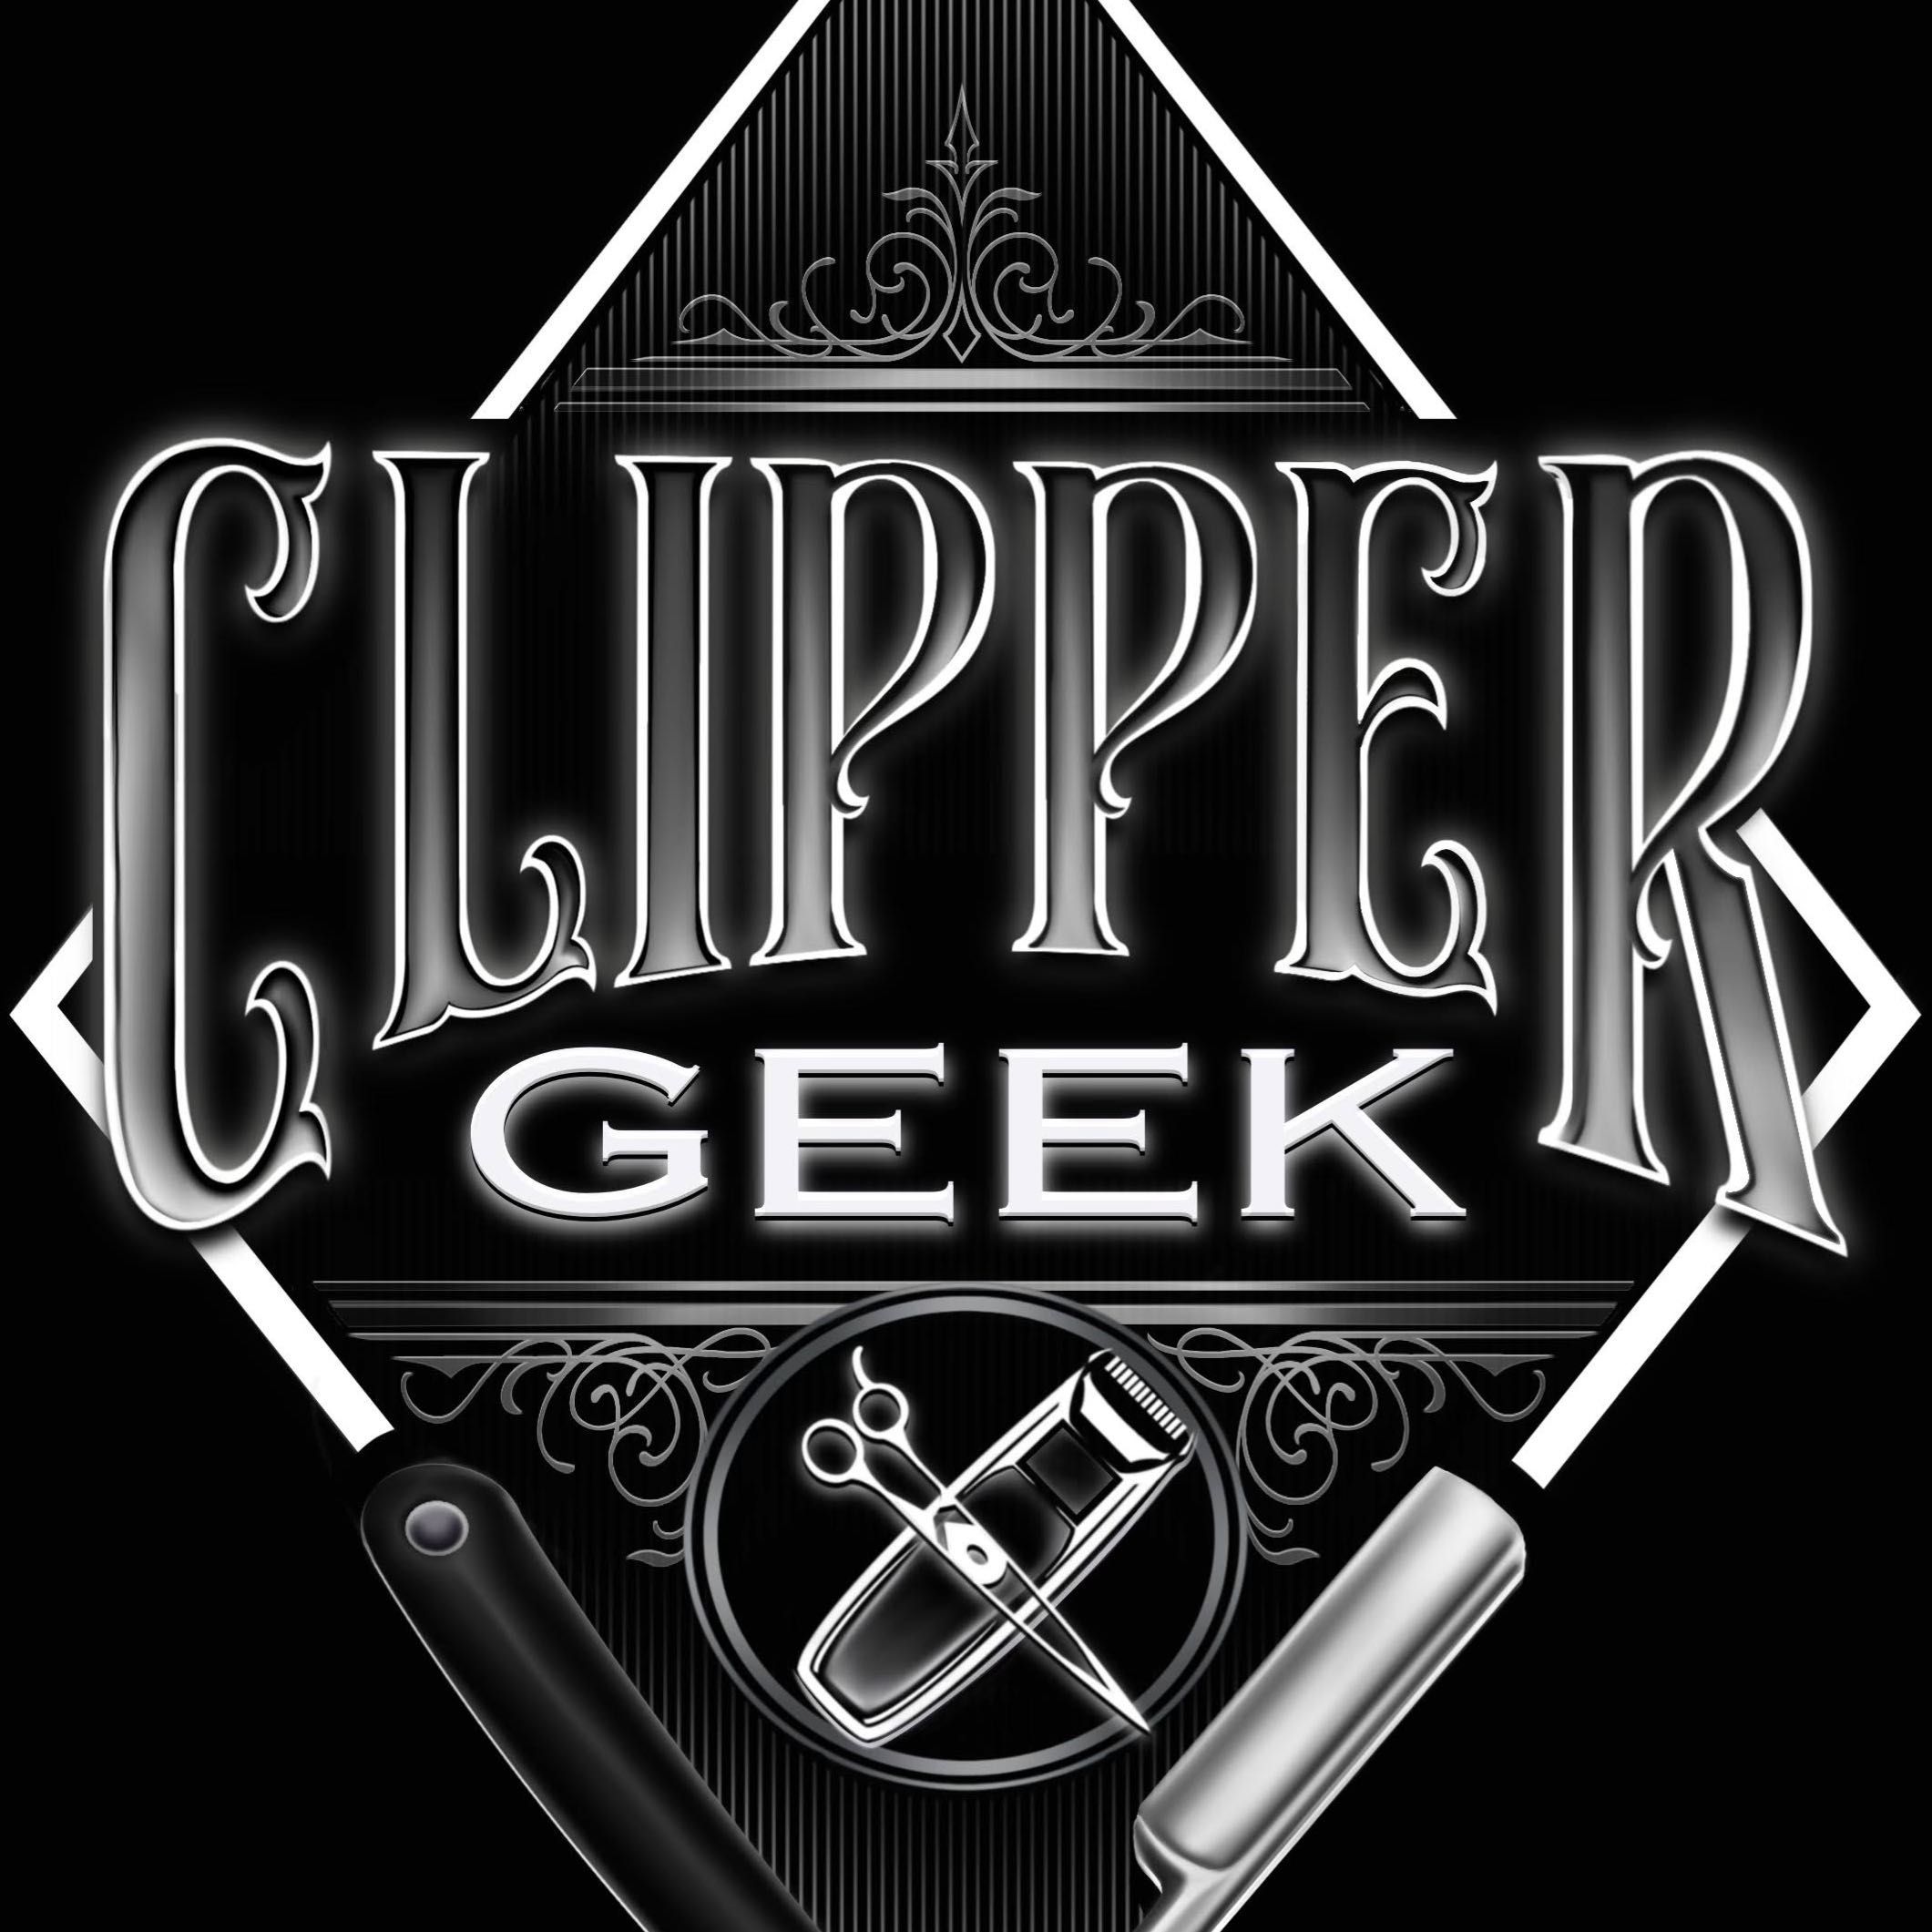 Clipper_Geek_ (Tito), 17011 S Dixie Hwy, Palmetto Bay, 33157